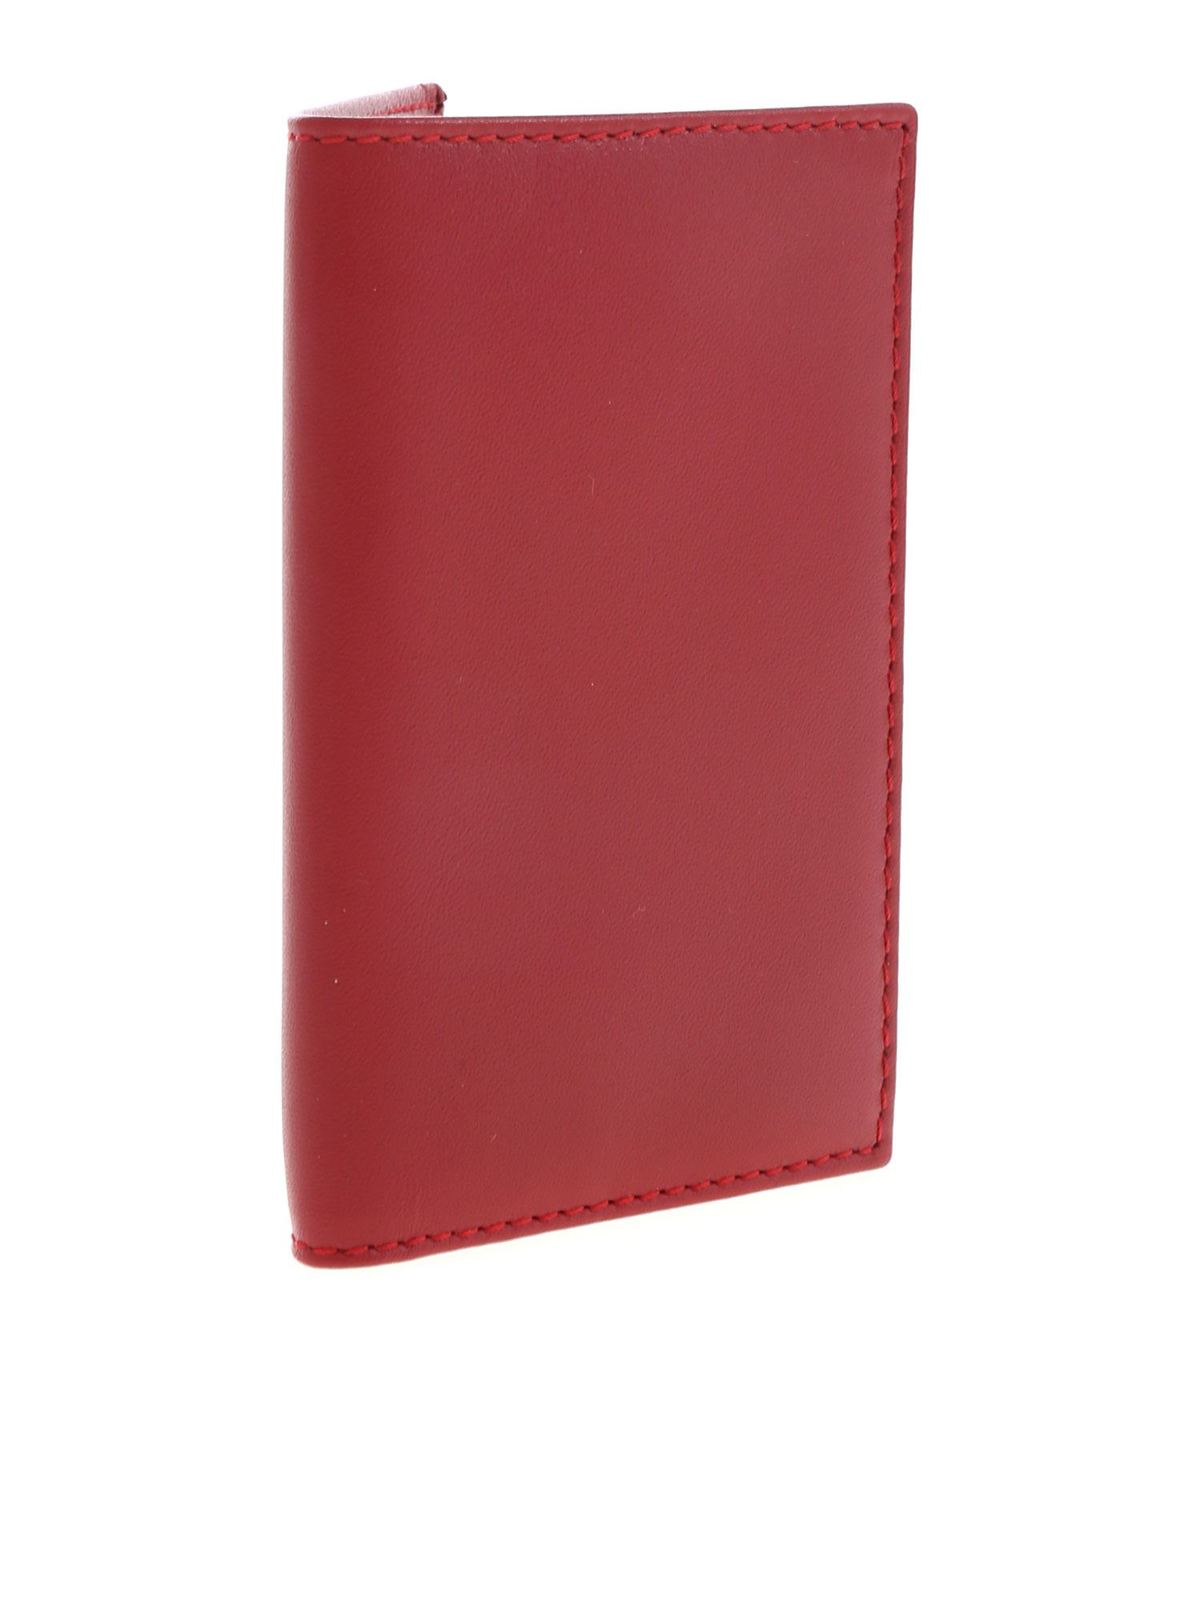 Jil Sander Pocket Wallet in Red for Men